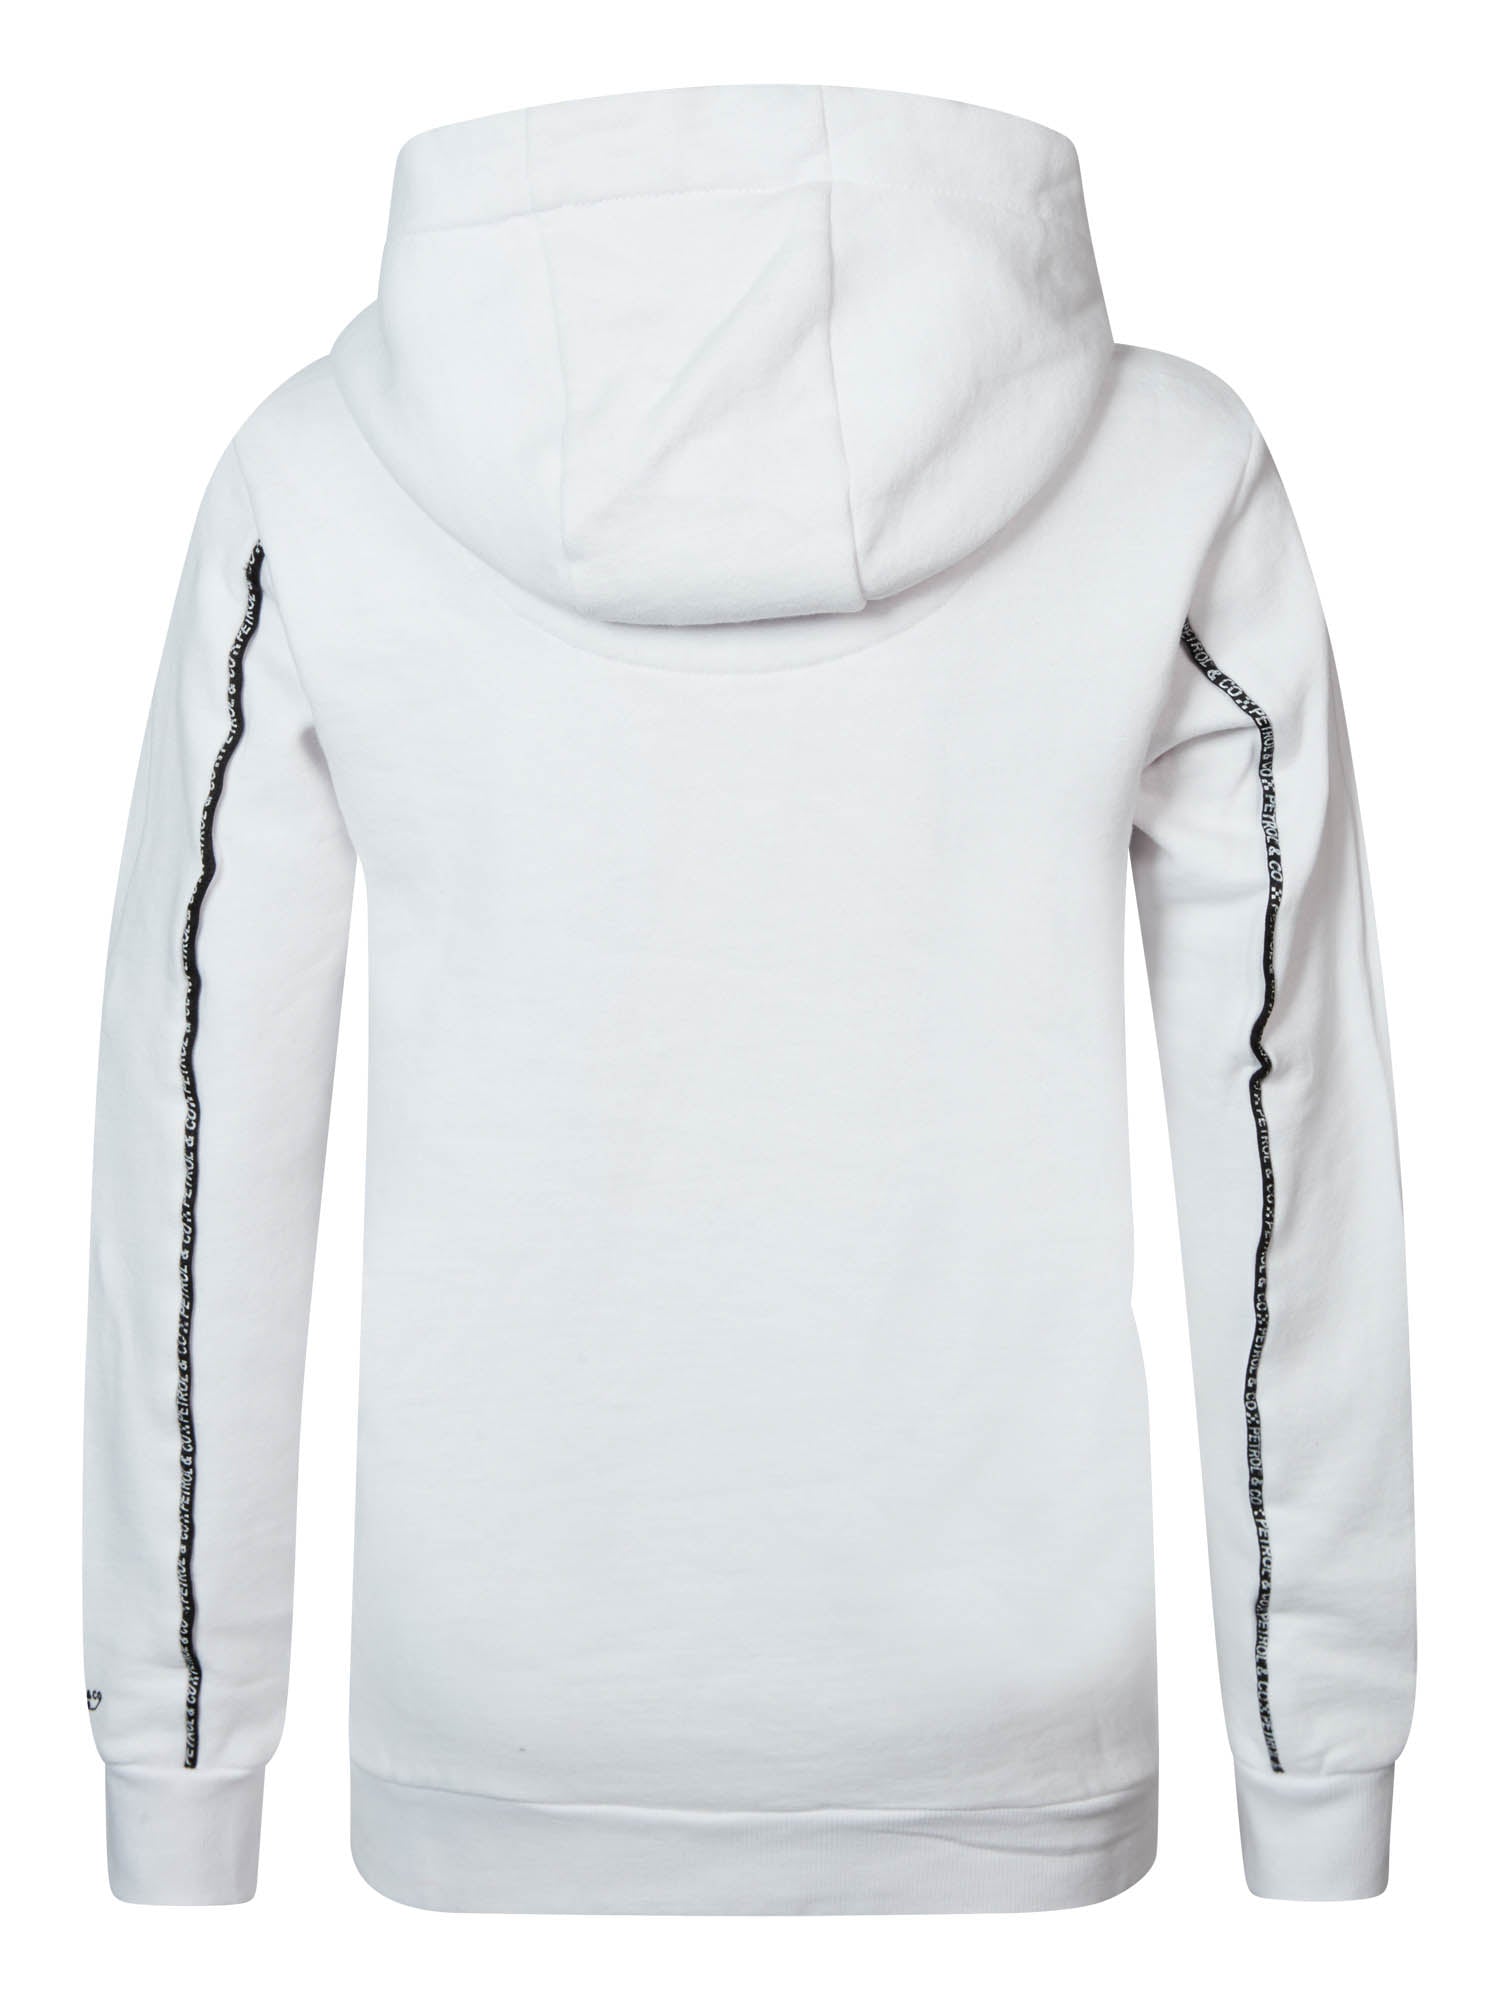 Jongens Boys Sweater Hooded Print van Petrol in de kleur Bright White in maat 164.